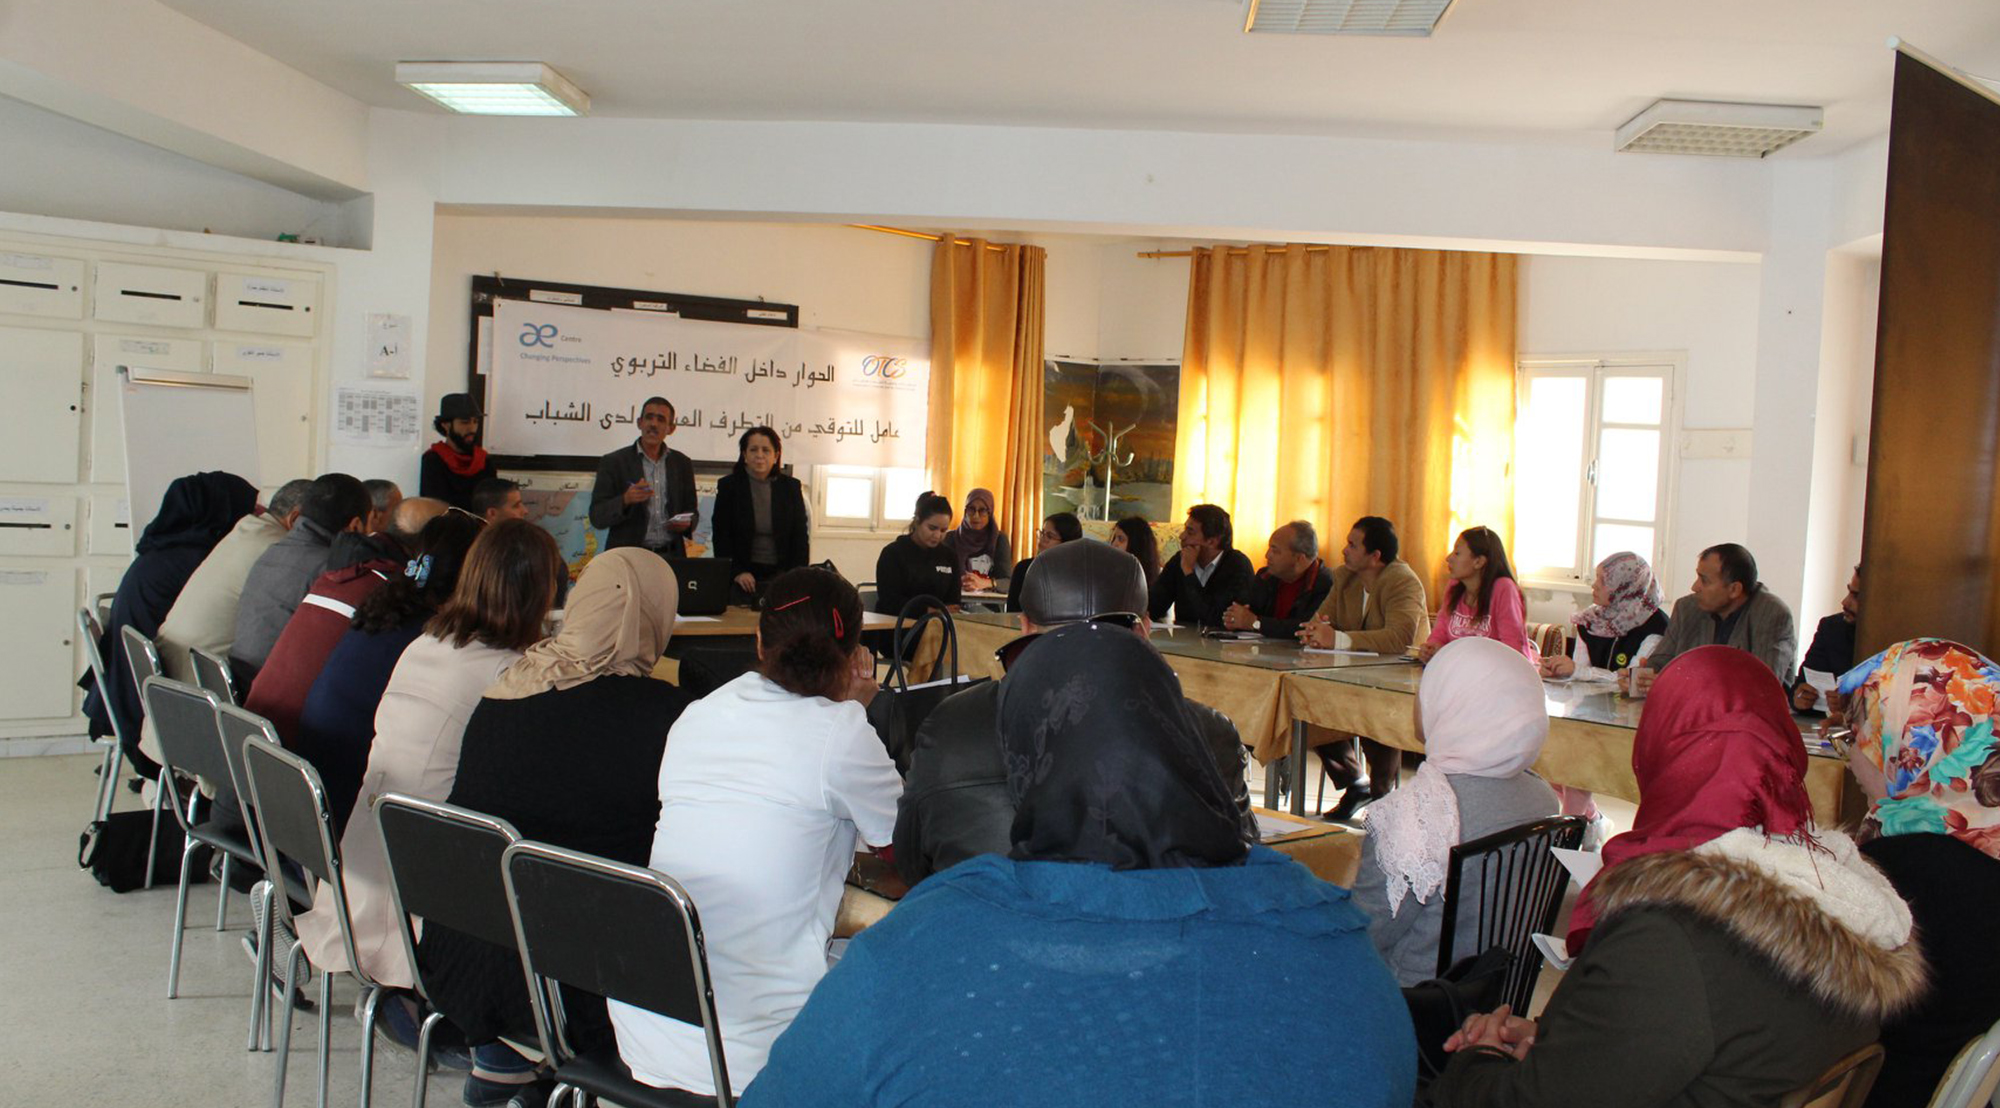 Dialog im Bildungsraum in Sidi Hassine, Tunesien